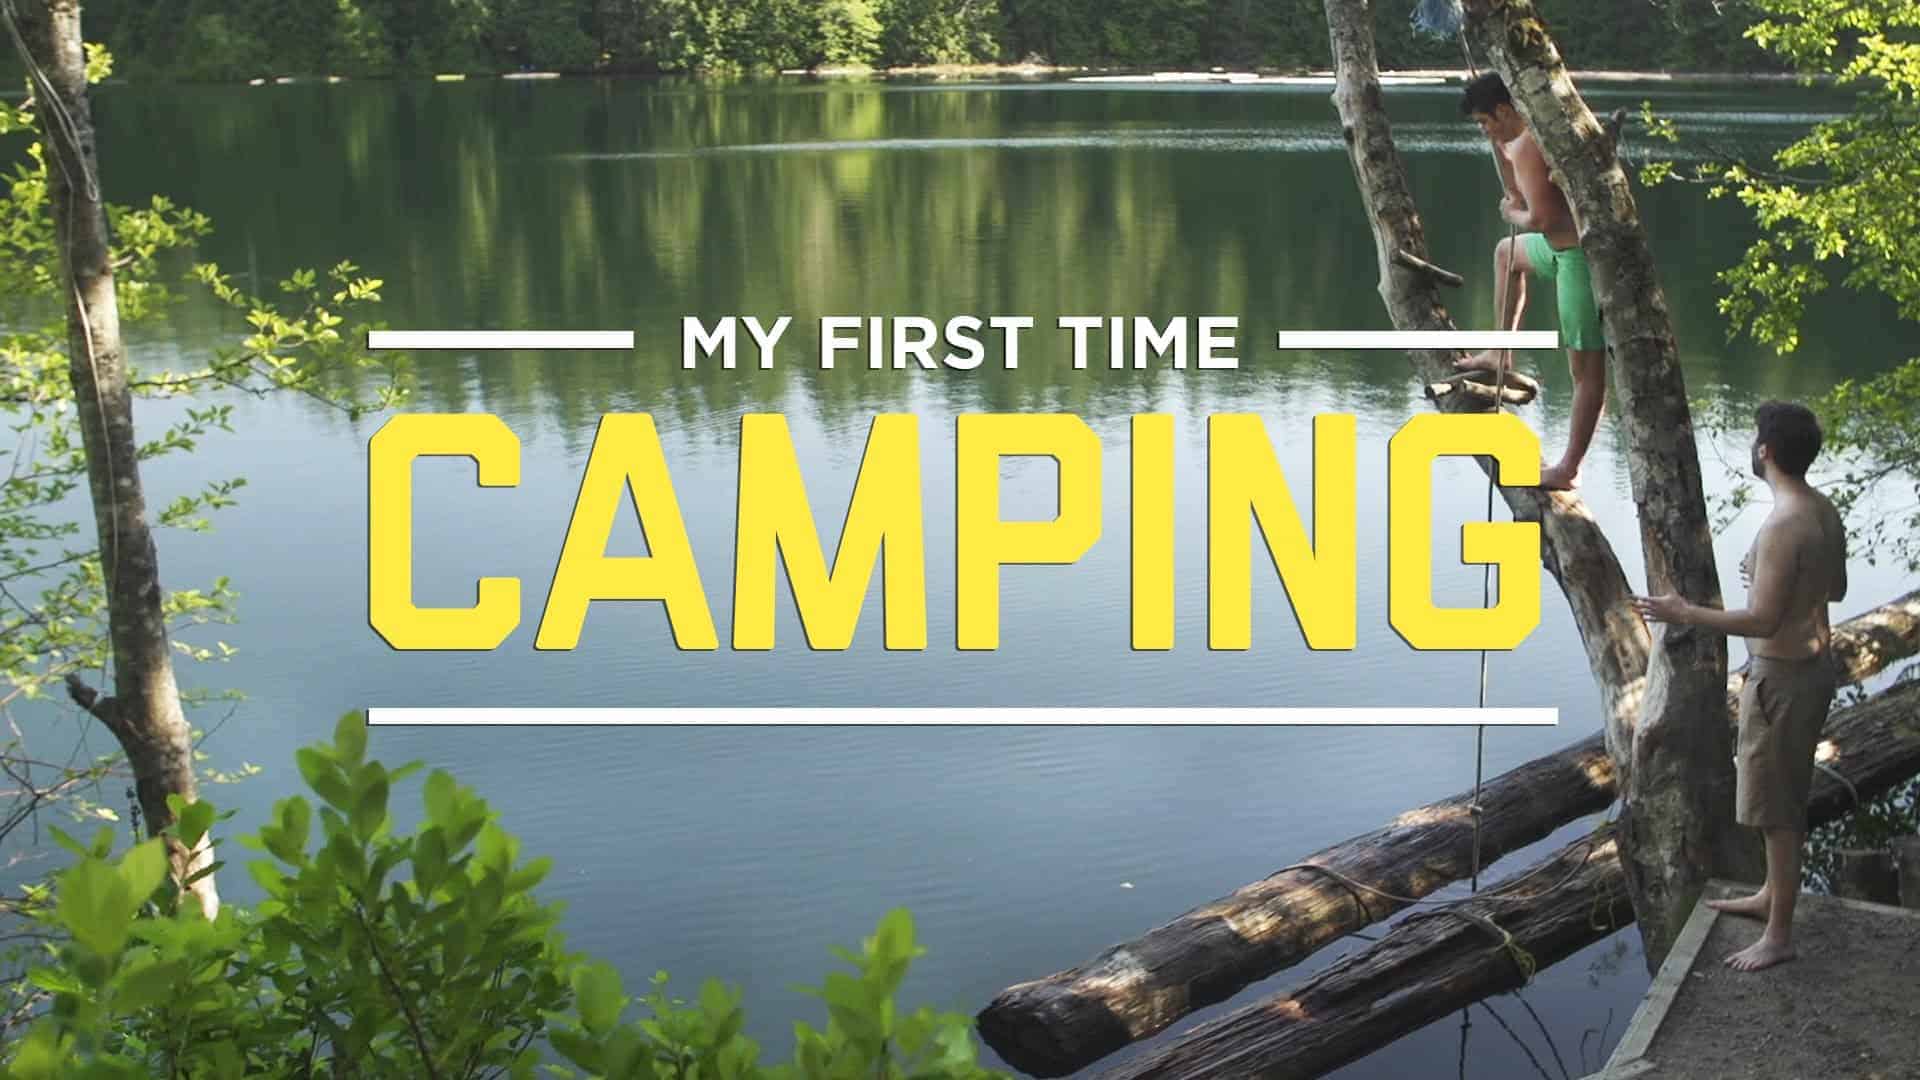 Das erste Mal campen - Camping ausprobiert